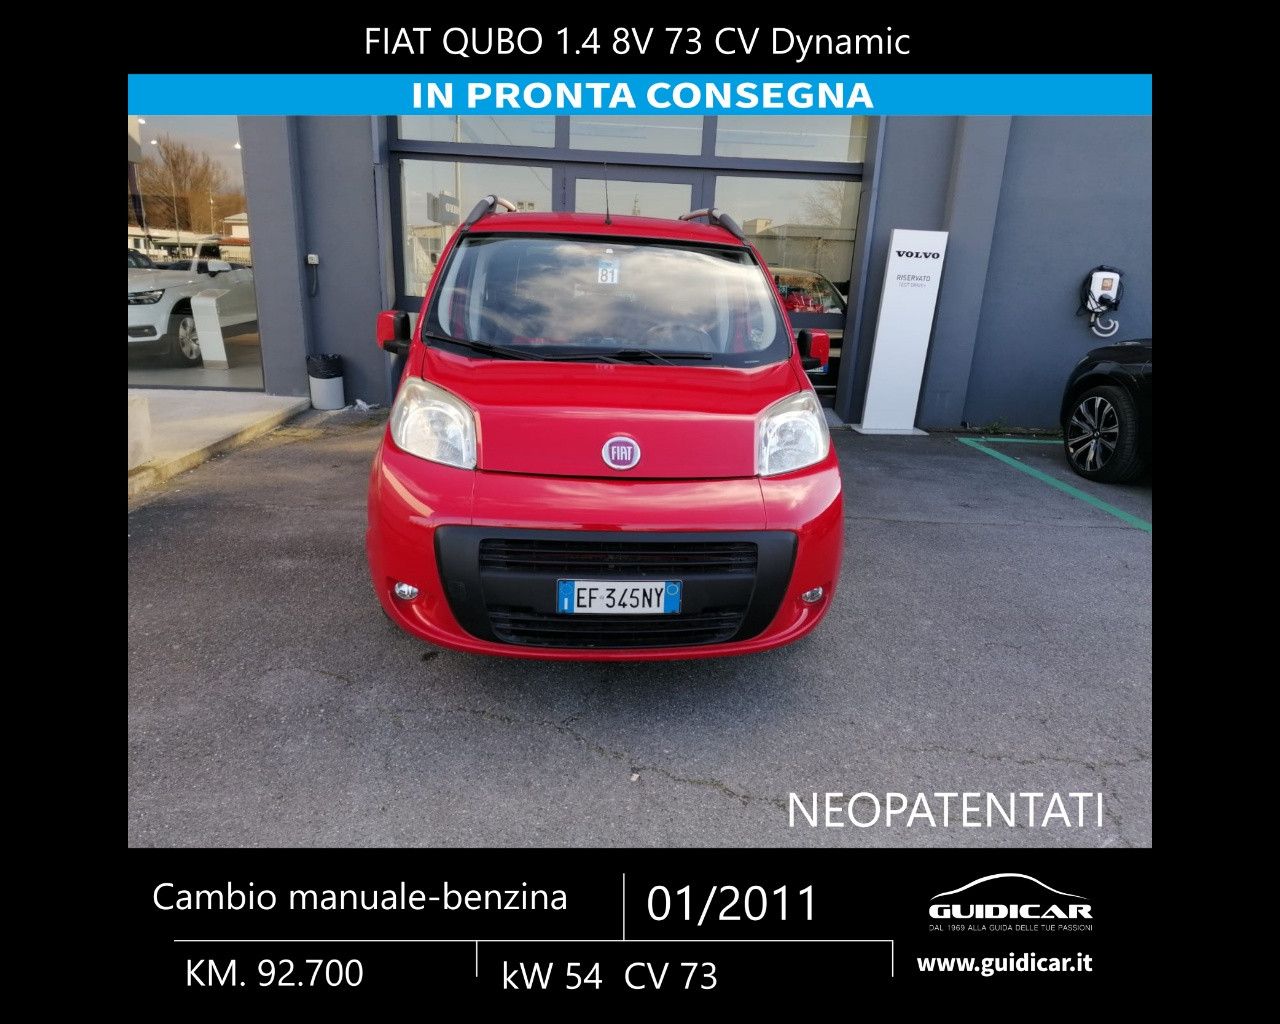 FIAT QUBO QUBO 1.4 8V 73 CV Dynamic